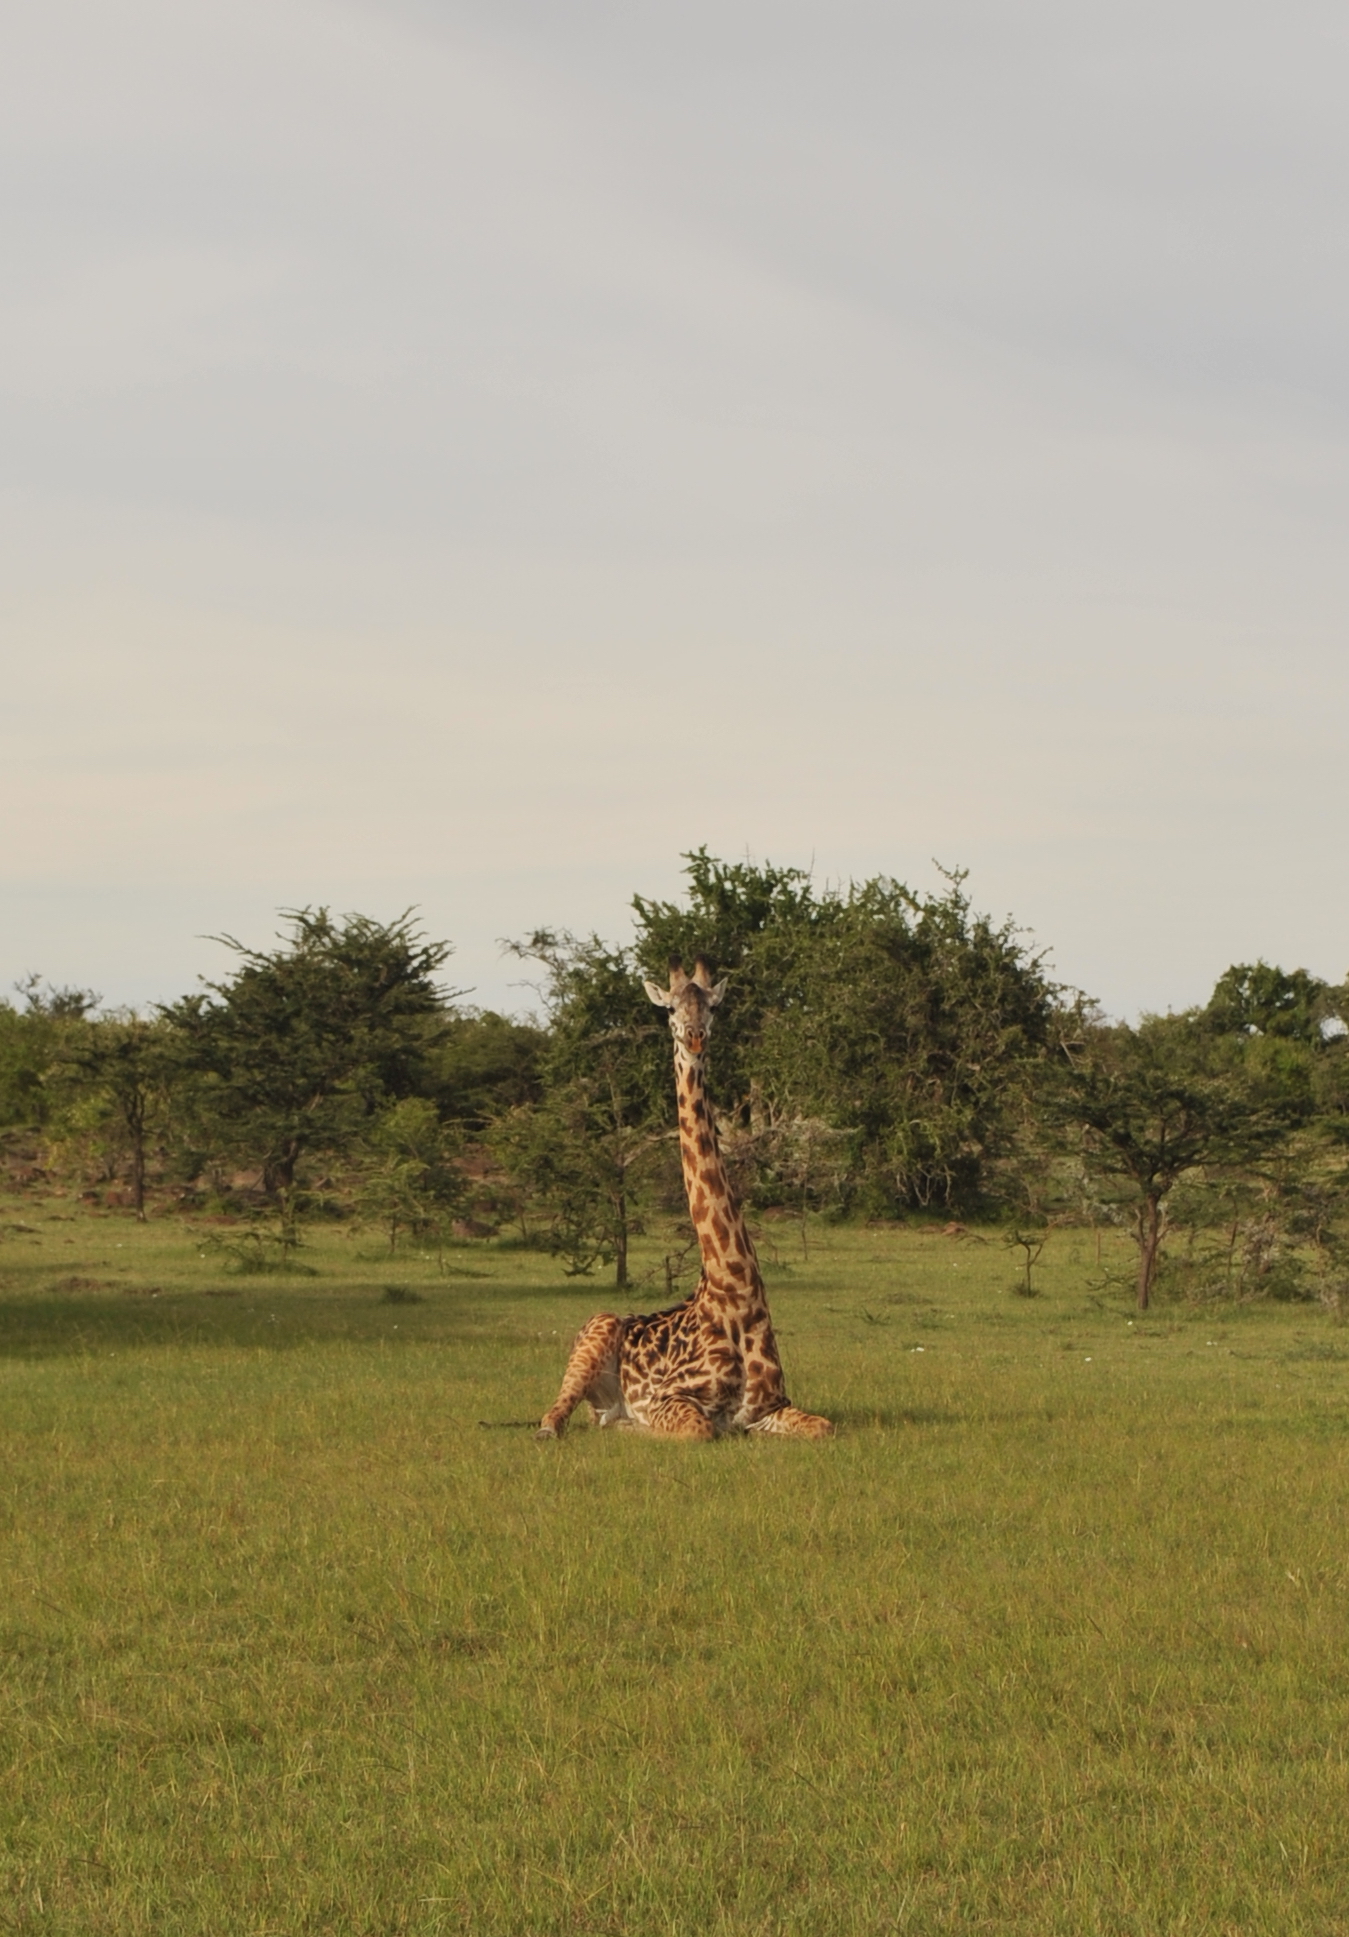 Masai giraffe; photo by Anton Crone